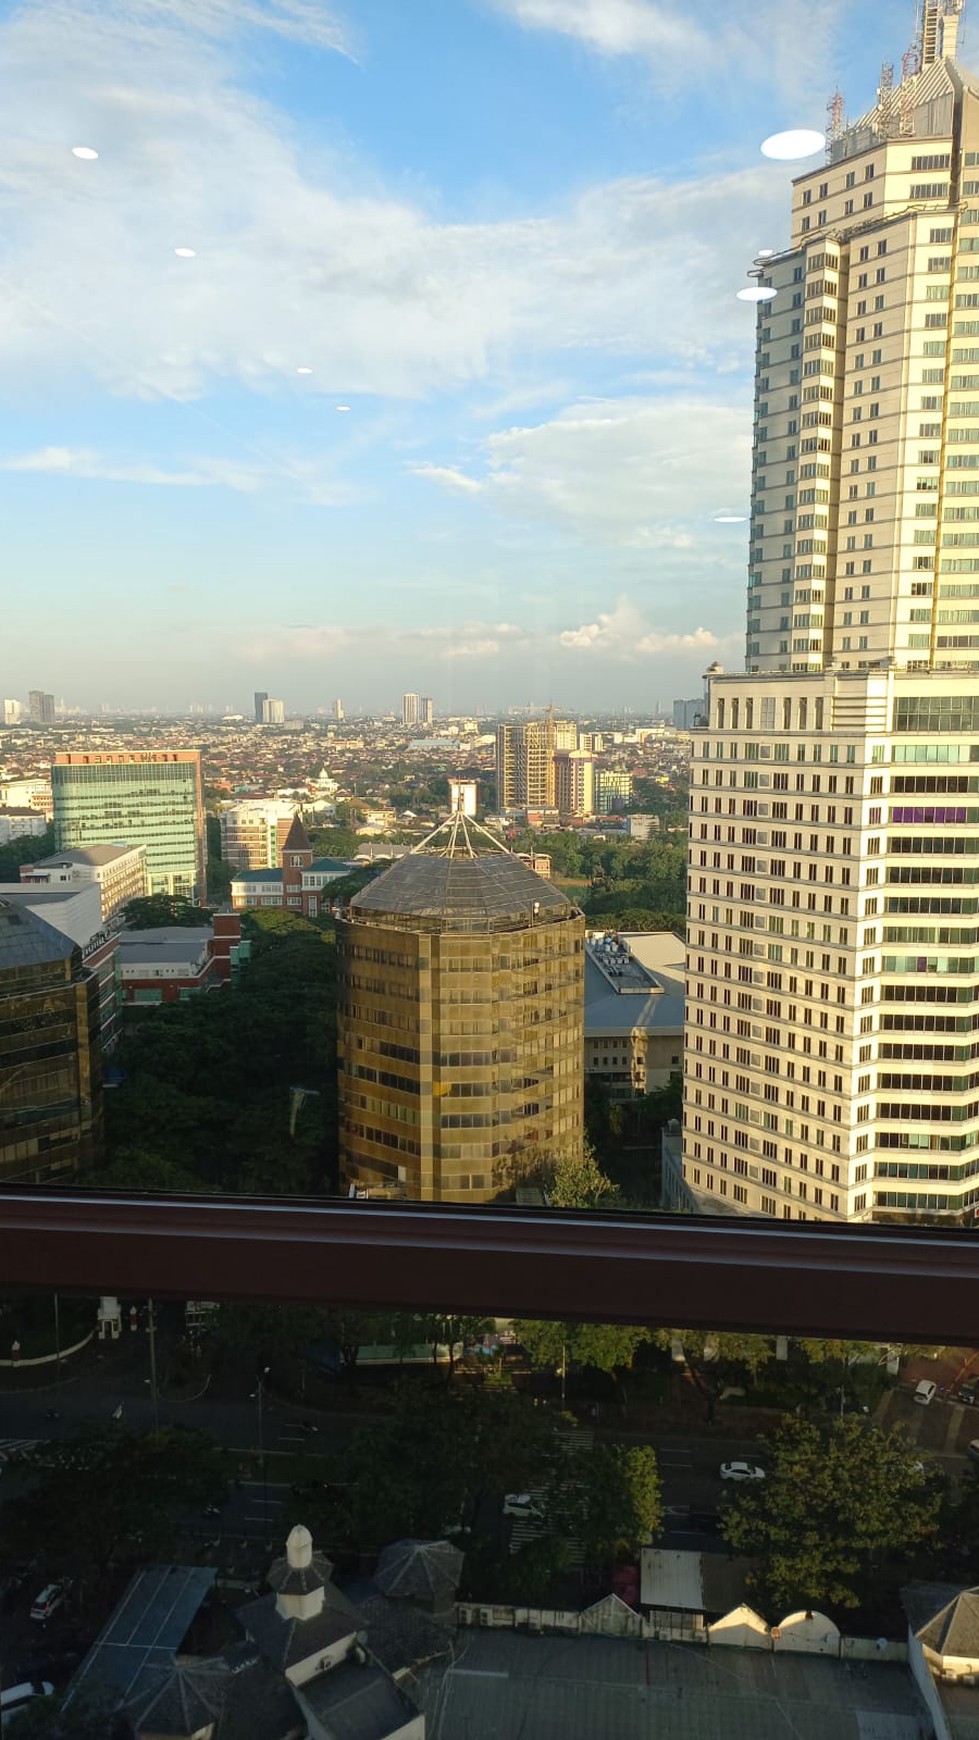 DIjual Apartemen bagus, mewah, luxury di U-Residence Tower 3 Lippo karawaci Tangerang